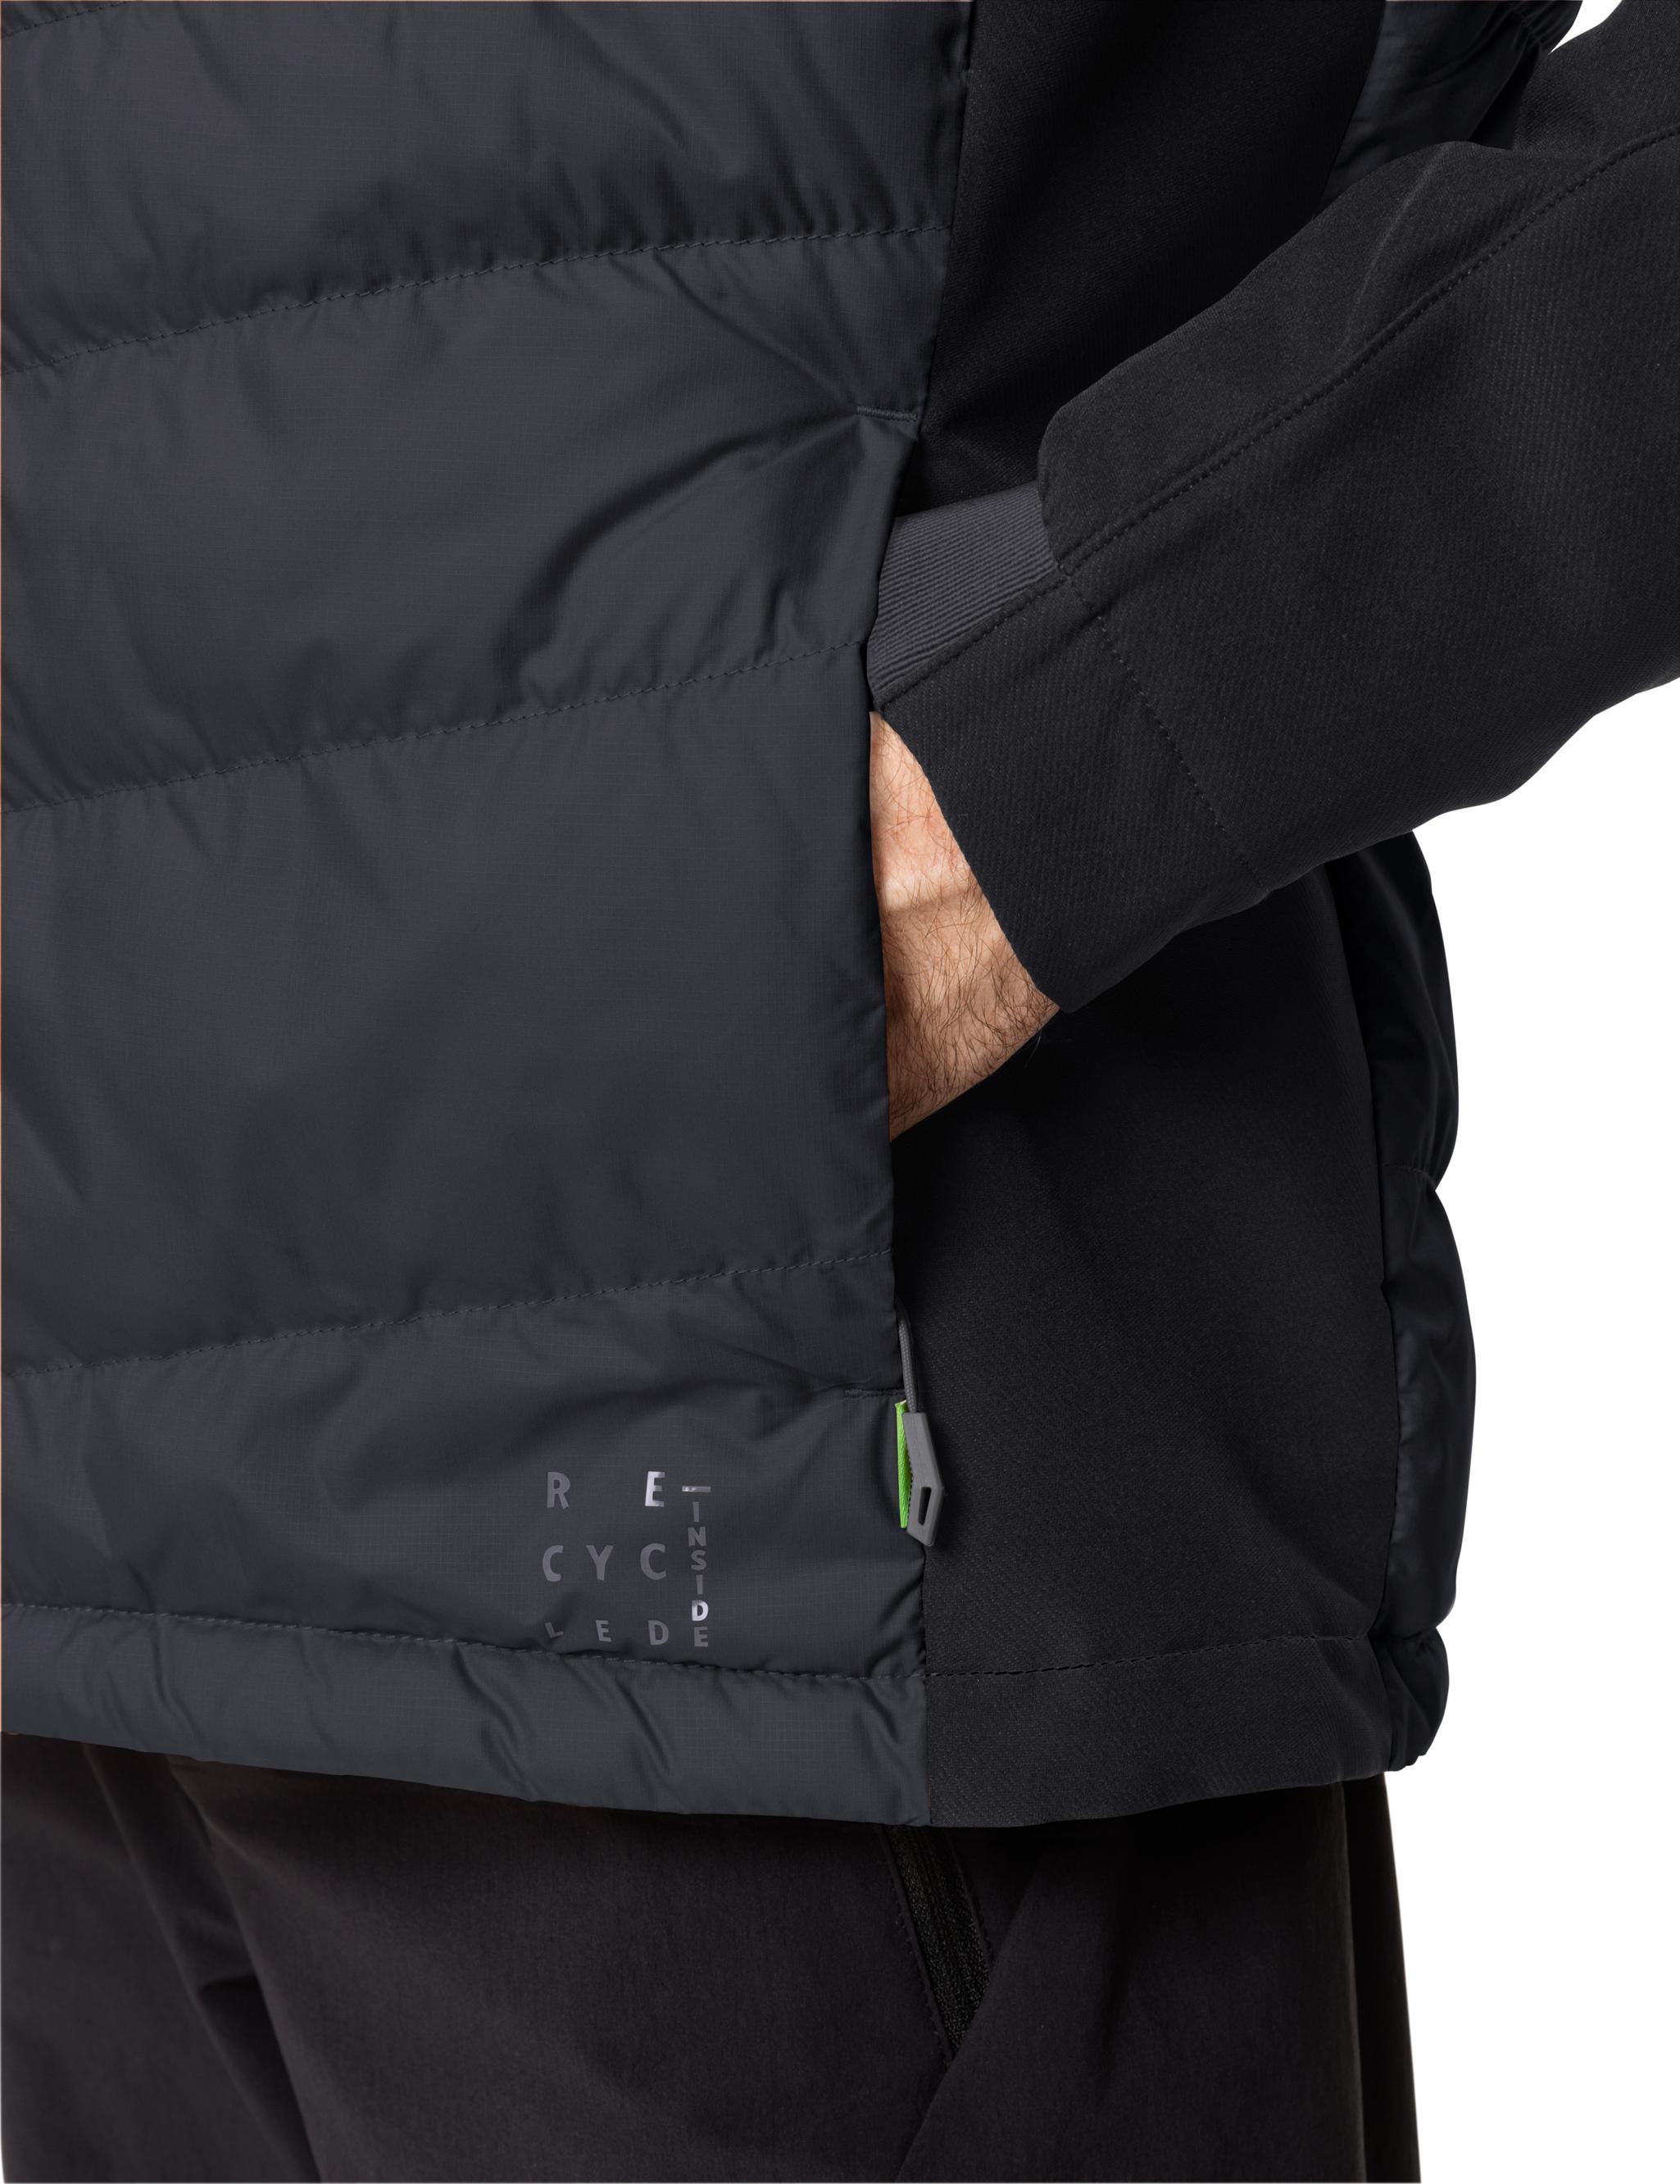 VAUDE Men\'s Elope Hybrid Jacket Herren im black von SportScheck Shop kaufen Outdoorjacke Online